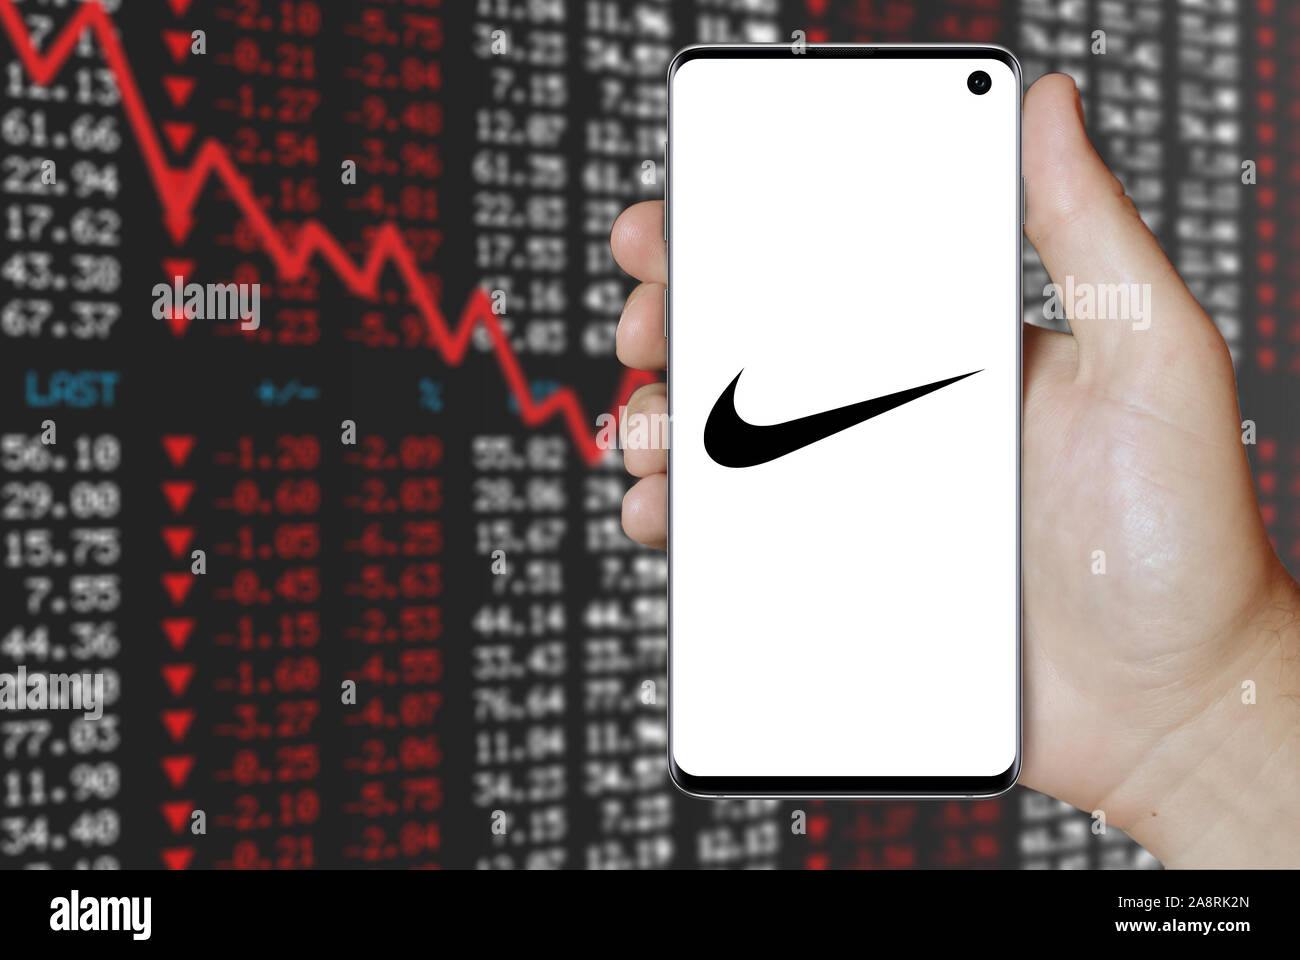 Logo der öffentlichen Unternehmen Nike auf dem Smartphone angezeigt. Negative Börse Hintergrund. Credit: PIXDUCE Stockfoto